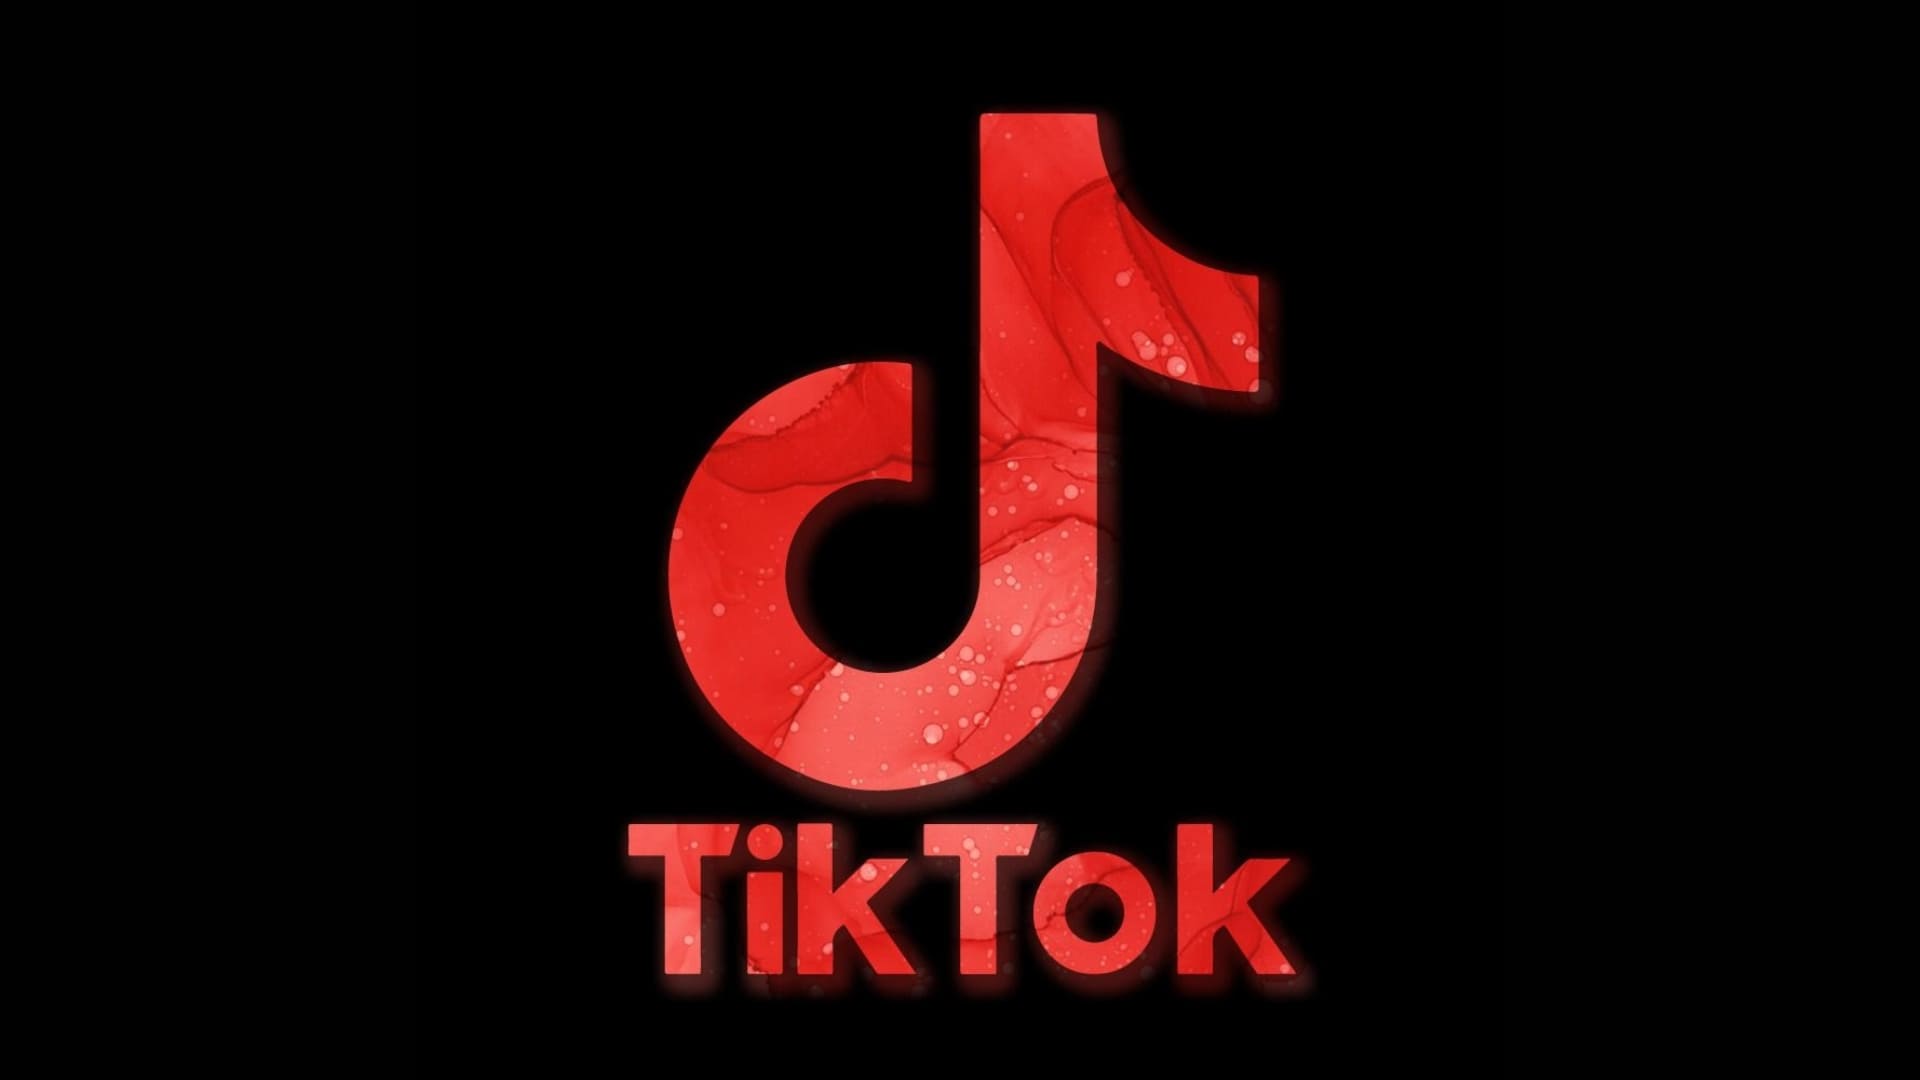 Download Tik Tok Image on 24wallpaper